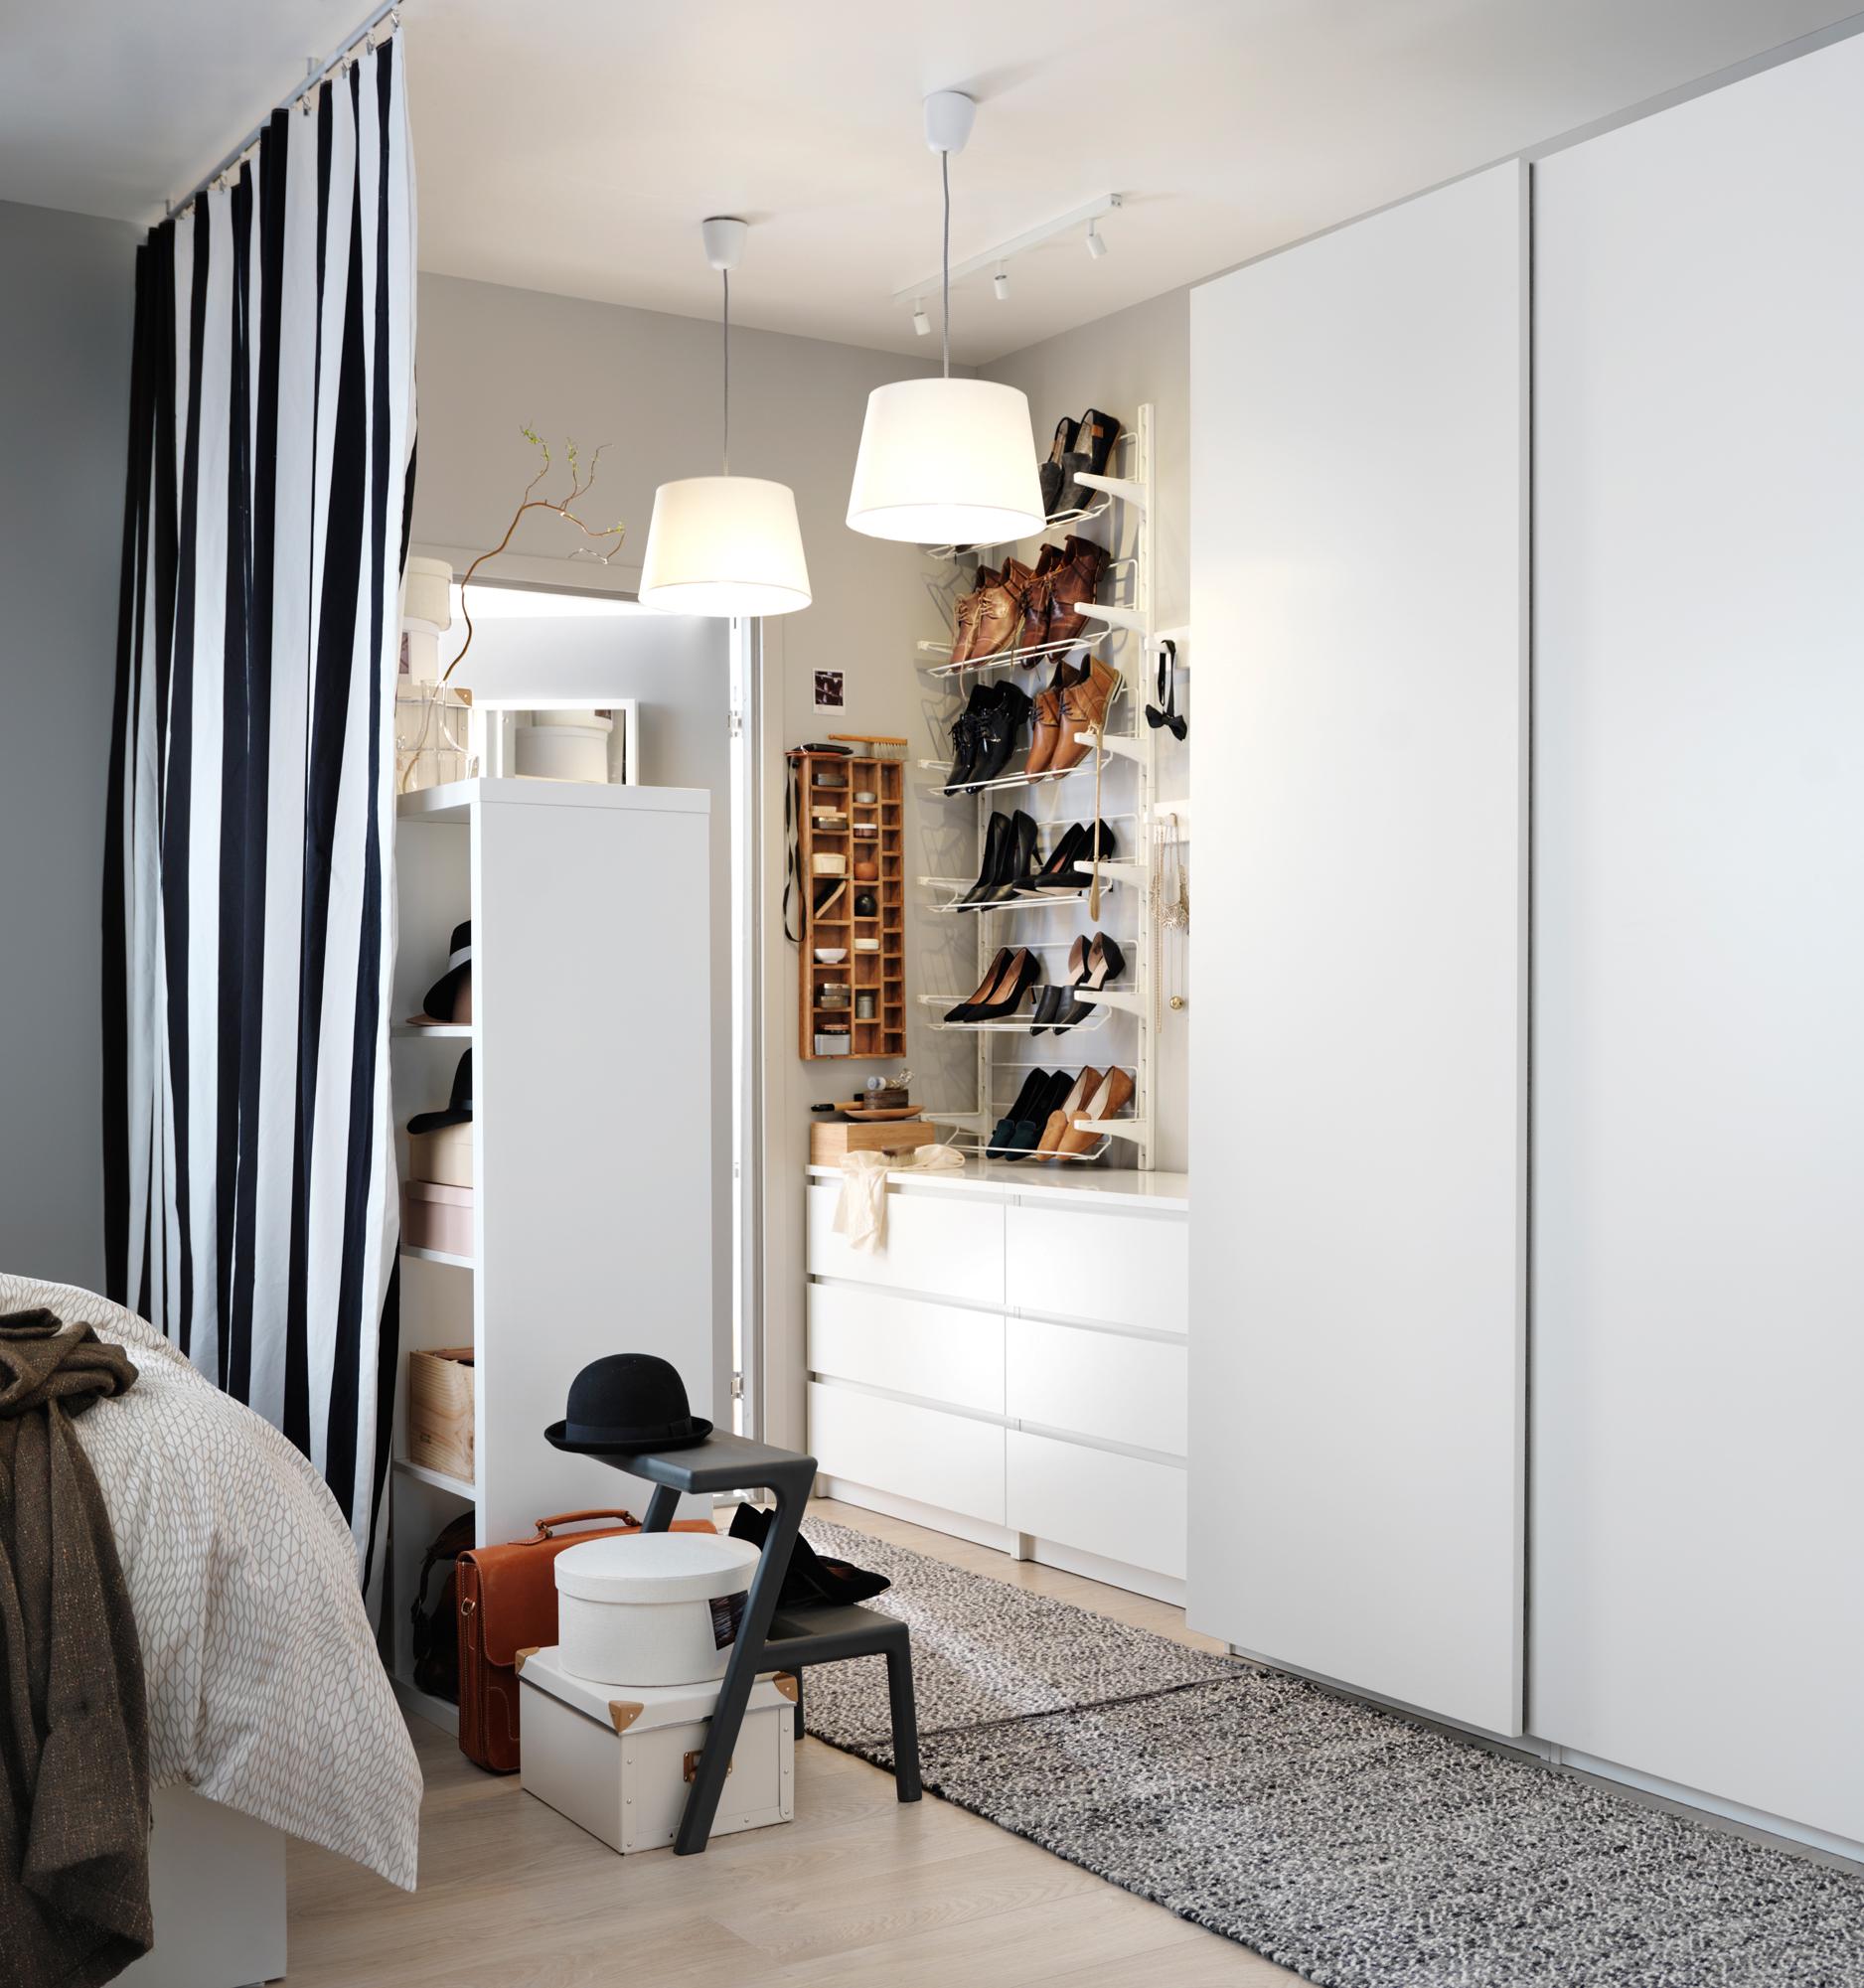 Begehbarer Kleiderschrank für kleines Zimmer #ikea #garderobe #garderobenschrank #schuhschrank #ankleidezimmer #zimmergestaltung ©Inter IKEA Systems B.V.